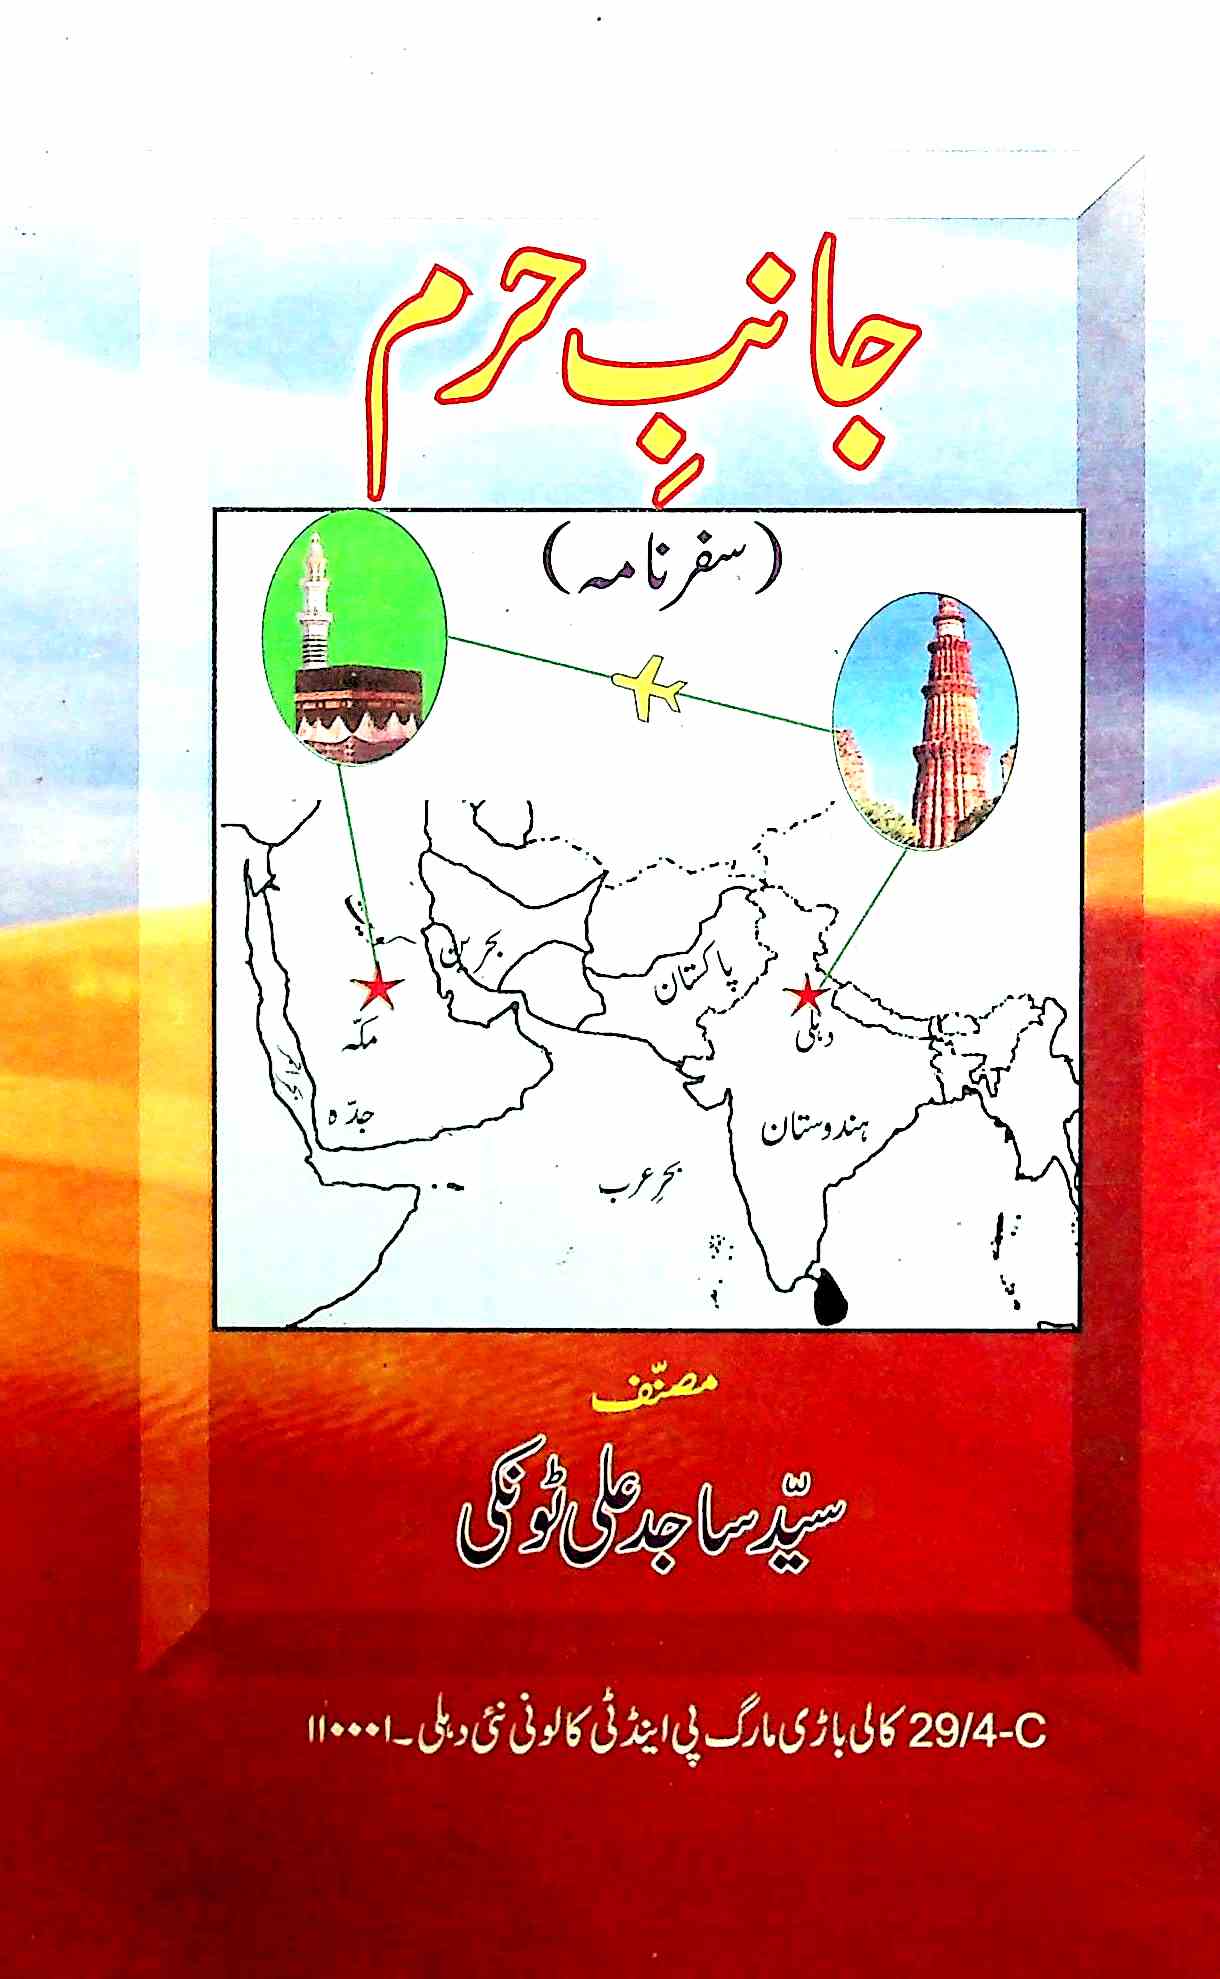 Janib-e-Haram